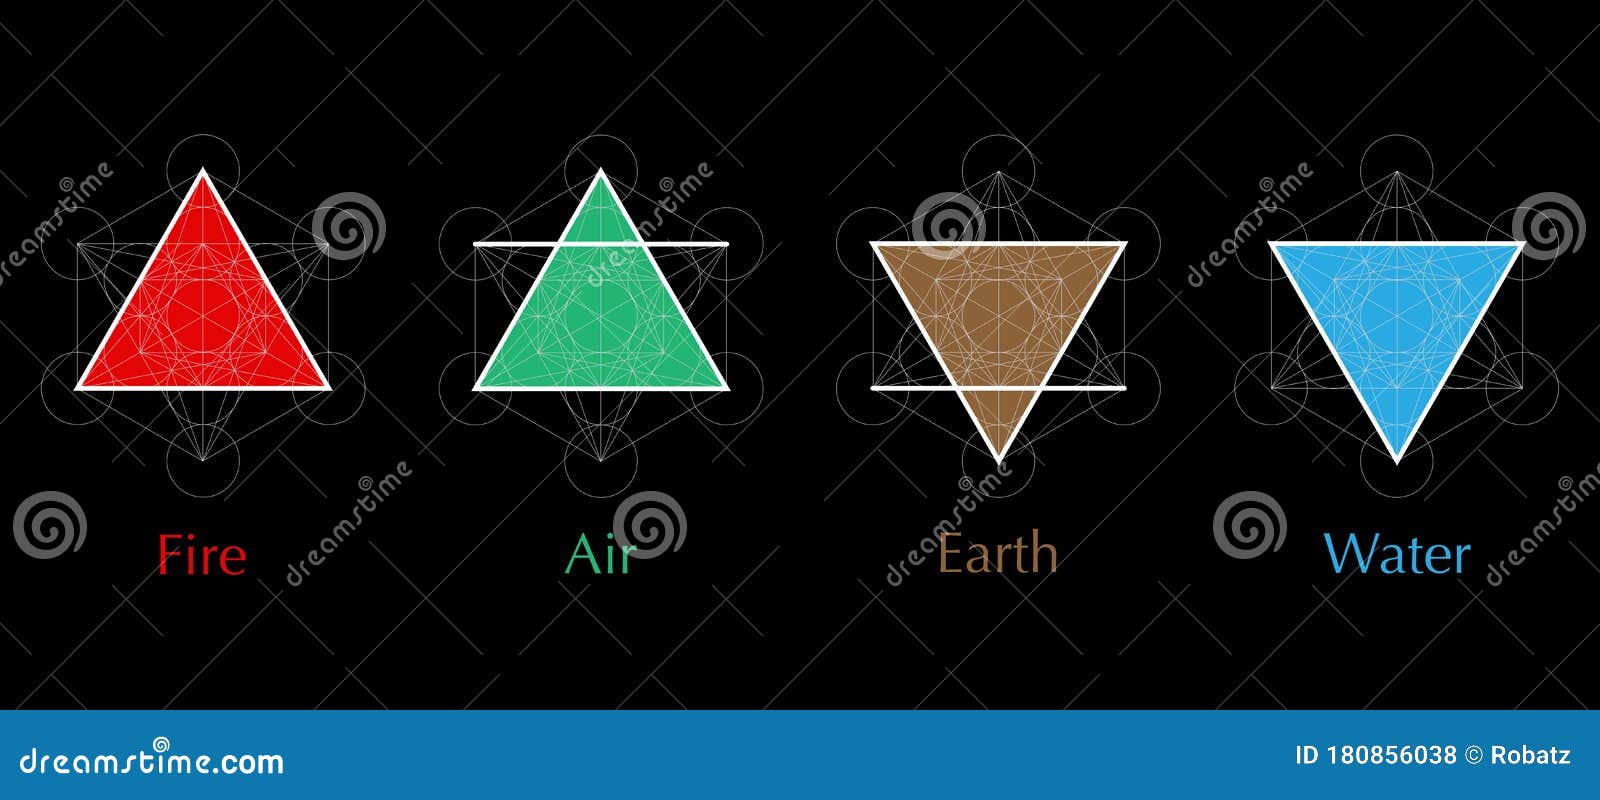 4 elements tattoo triangle